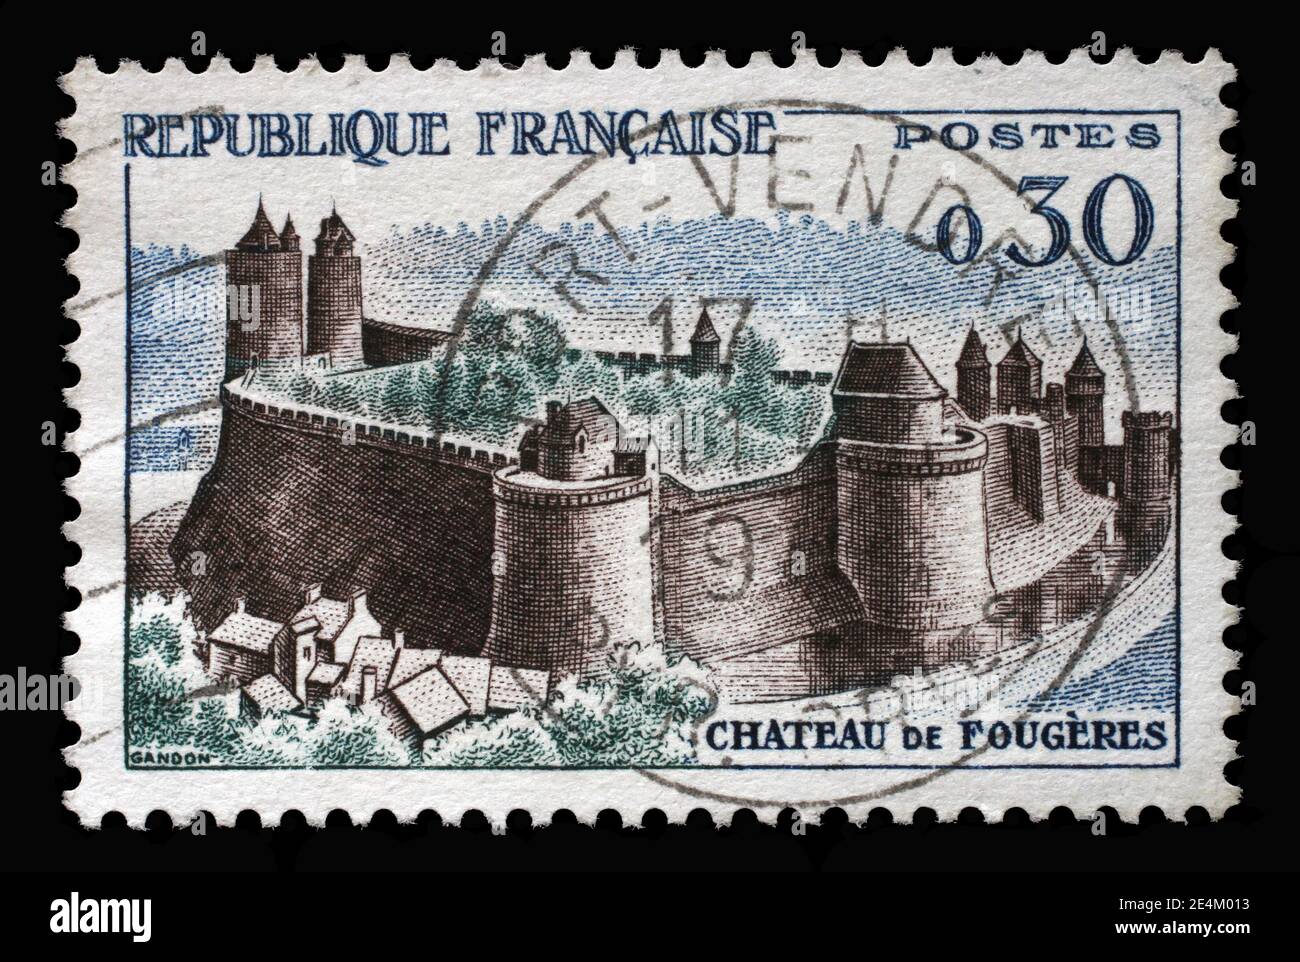 Le timbre imprimé en France montre le château de Fougères, série touristique, vers 1960 Banque D'Images